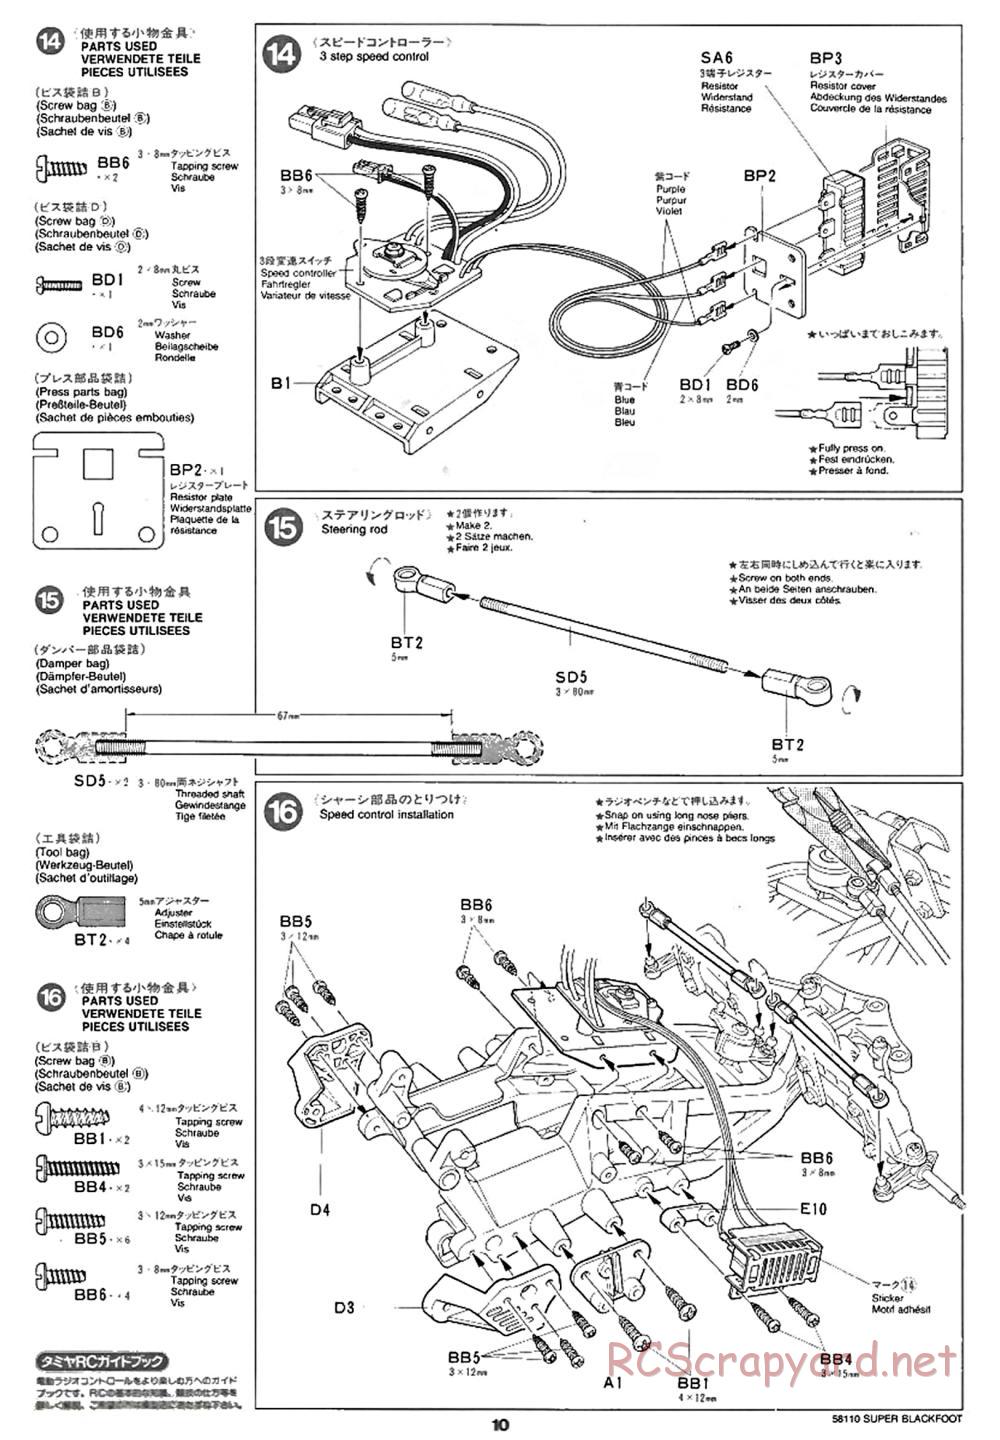 Tamiya - Super Blackfoot Chassis - Manual - Page 10